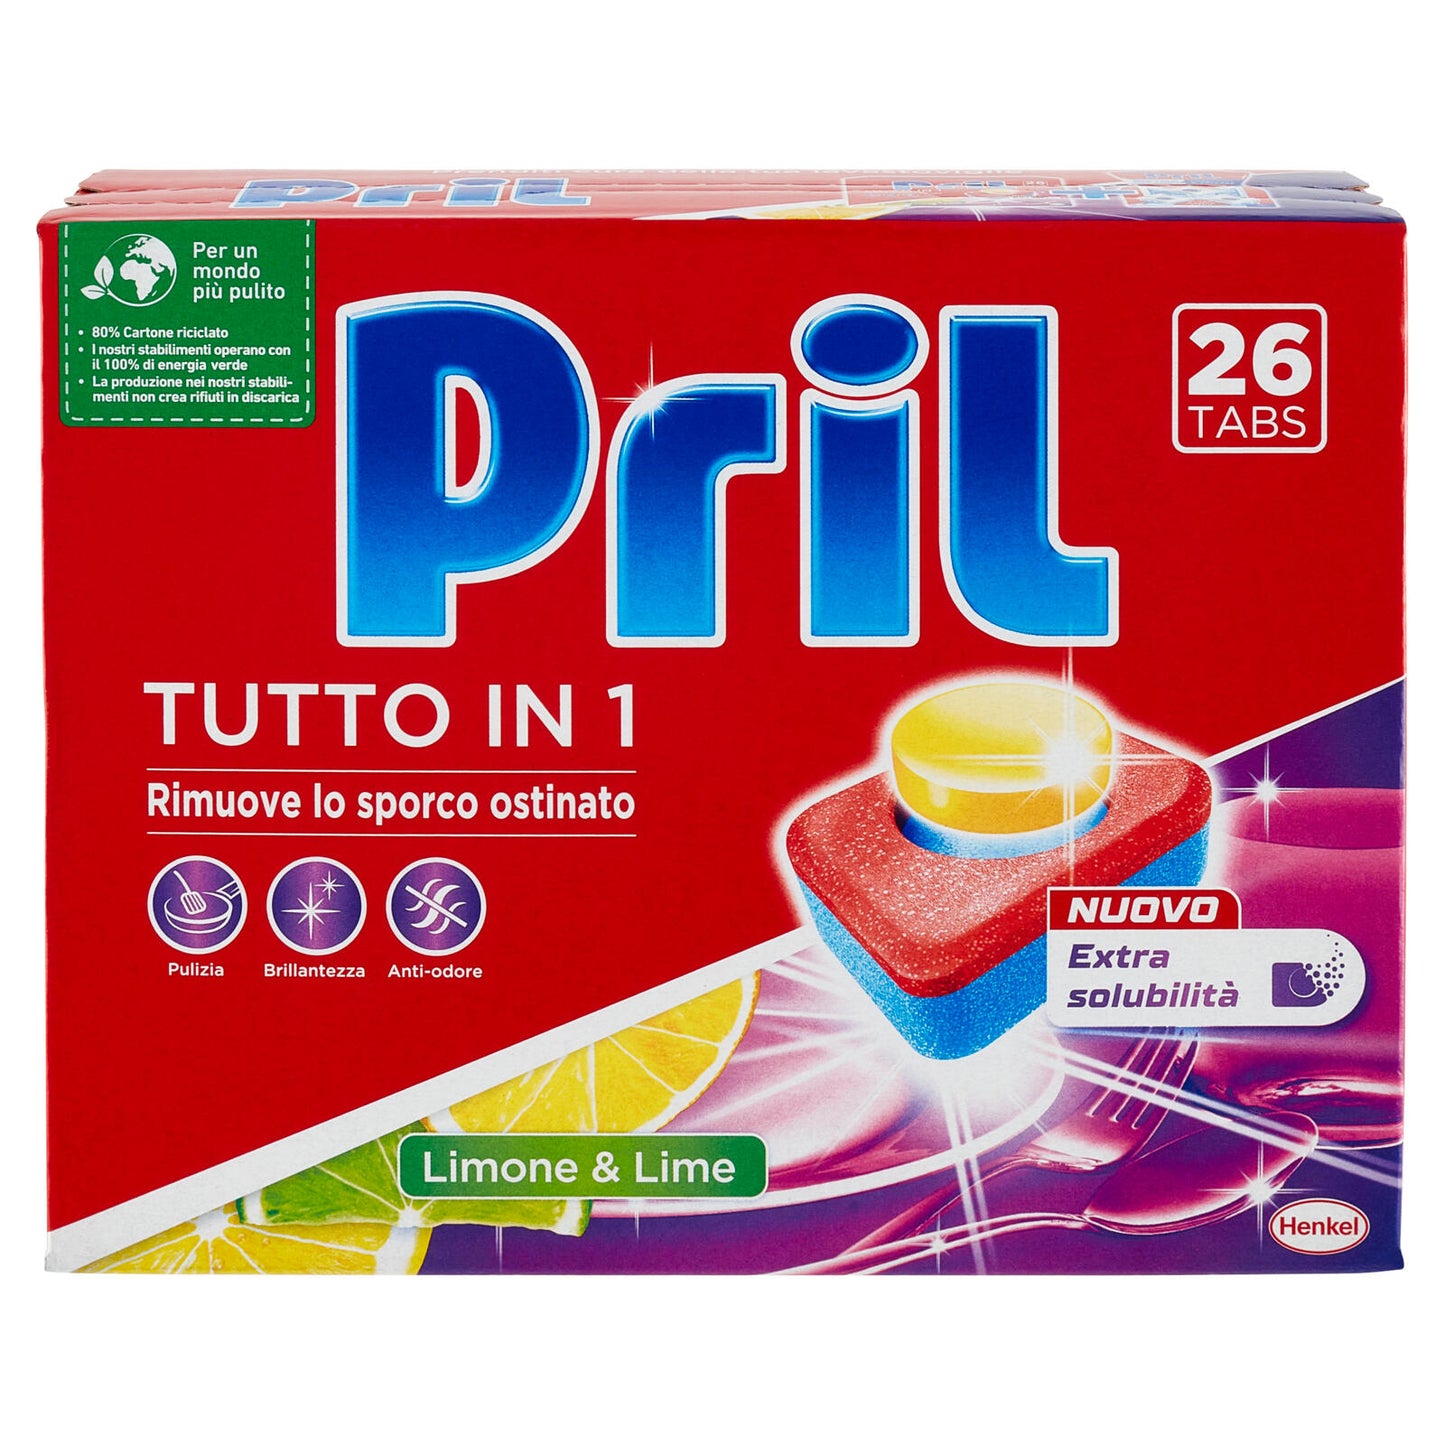 PRIL Tabs Tutto in 1 Limone 26 lavaggi 468g